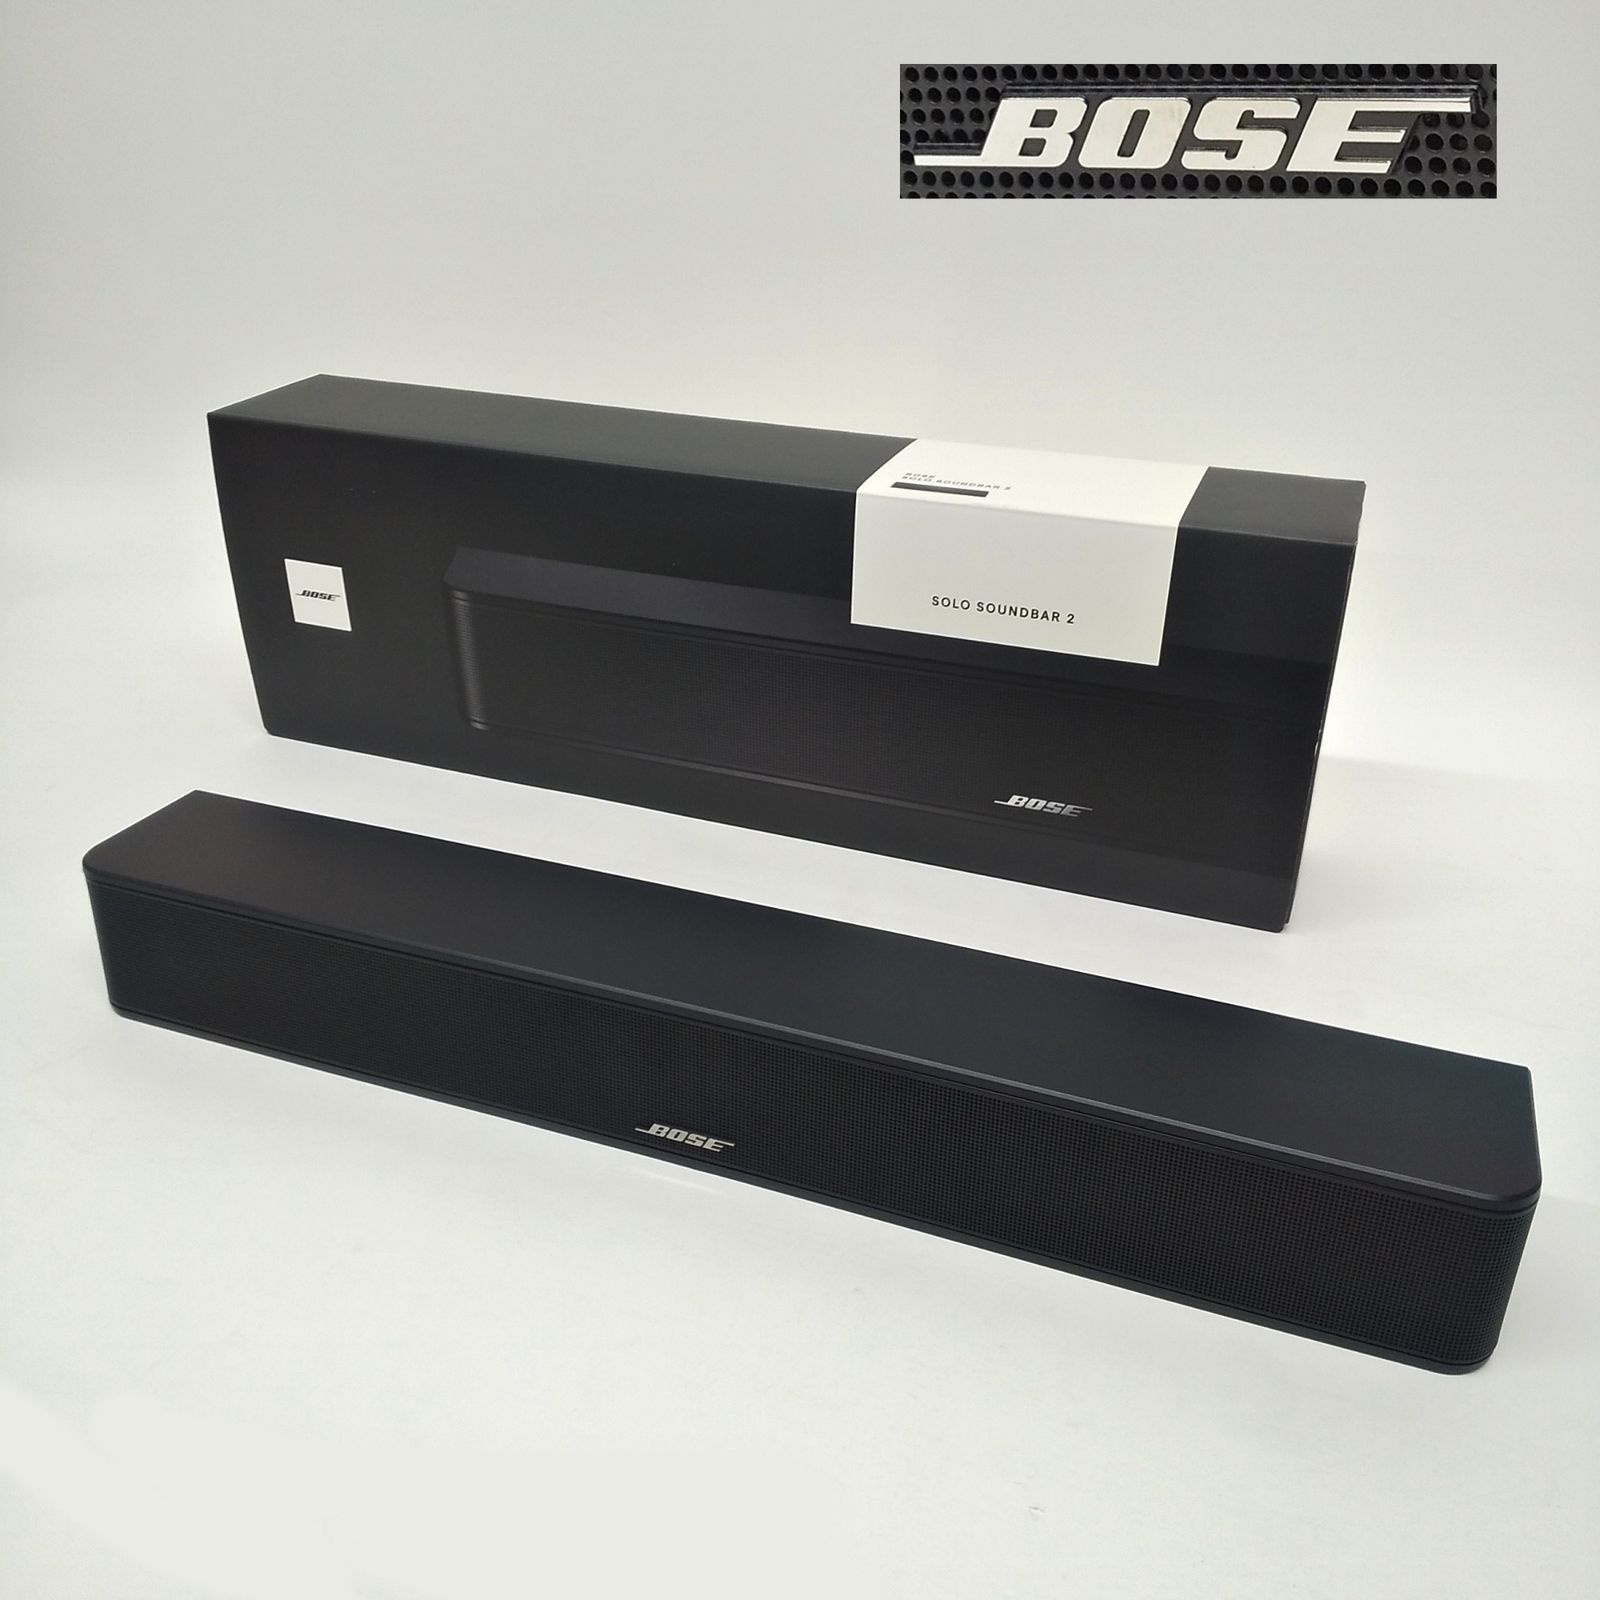 BOSE SOLO SOUNDBAR SERIES II スピーカー Bluetooth ソロ サウンドバー 音楽 TV スマホ ワイヤレス ボーズ  R2404-163